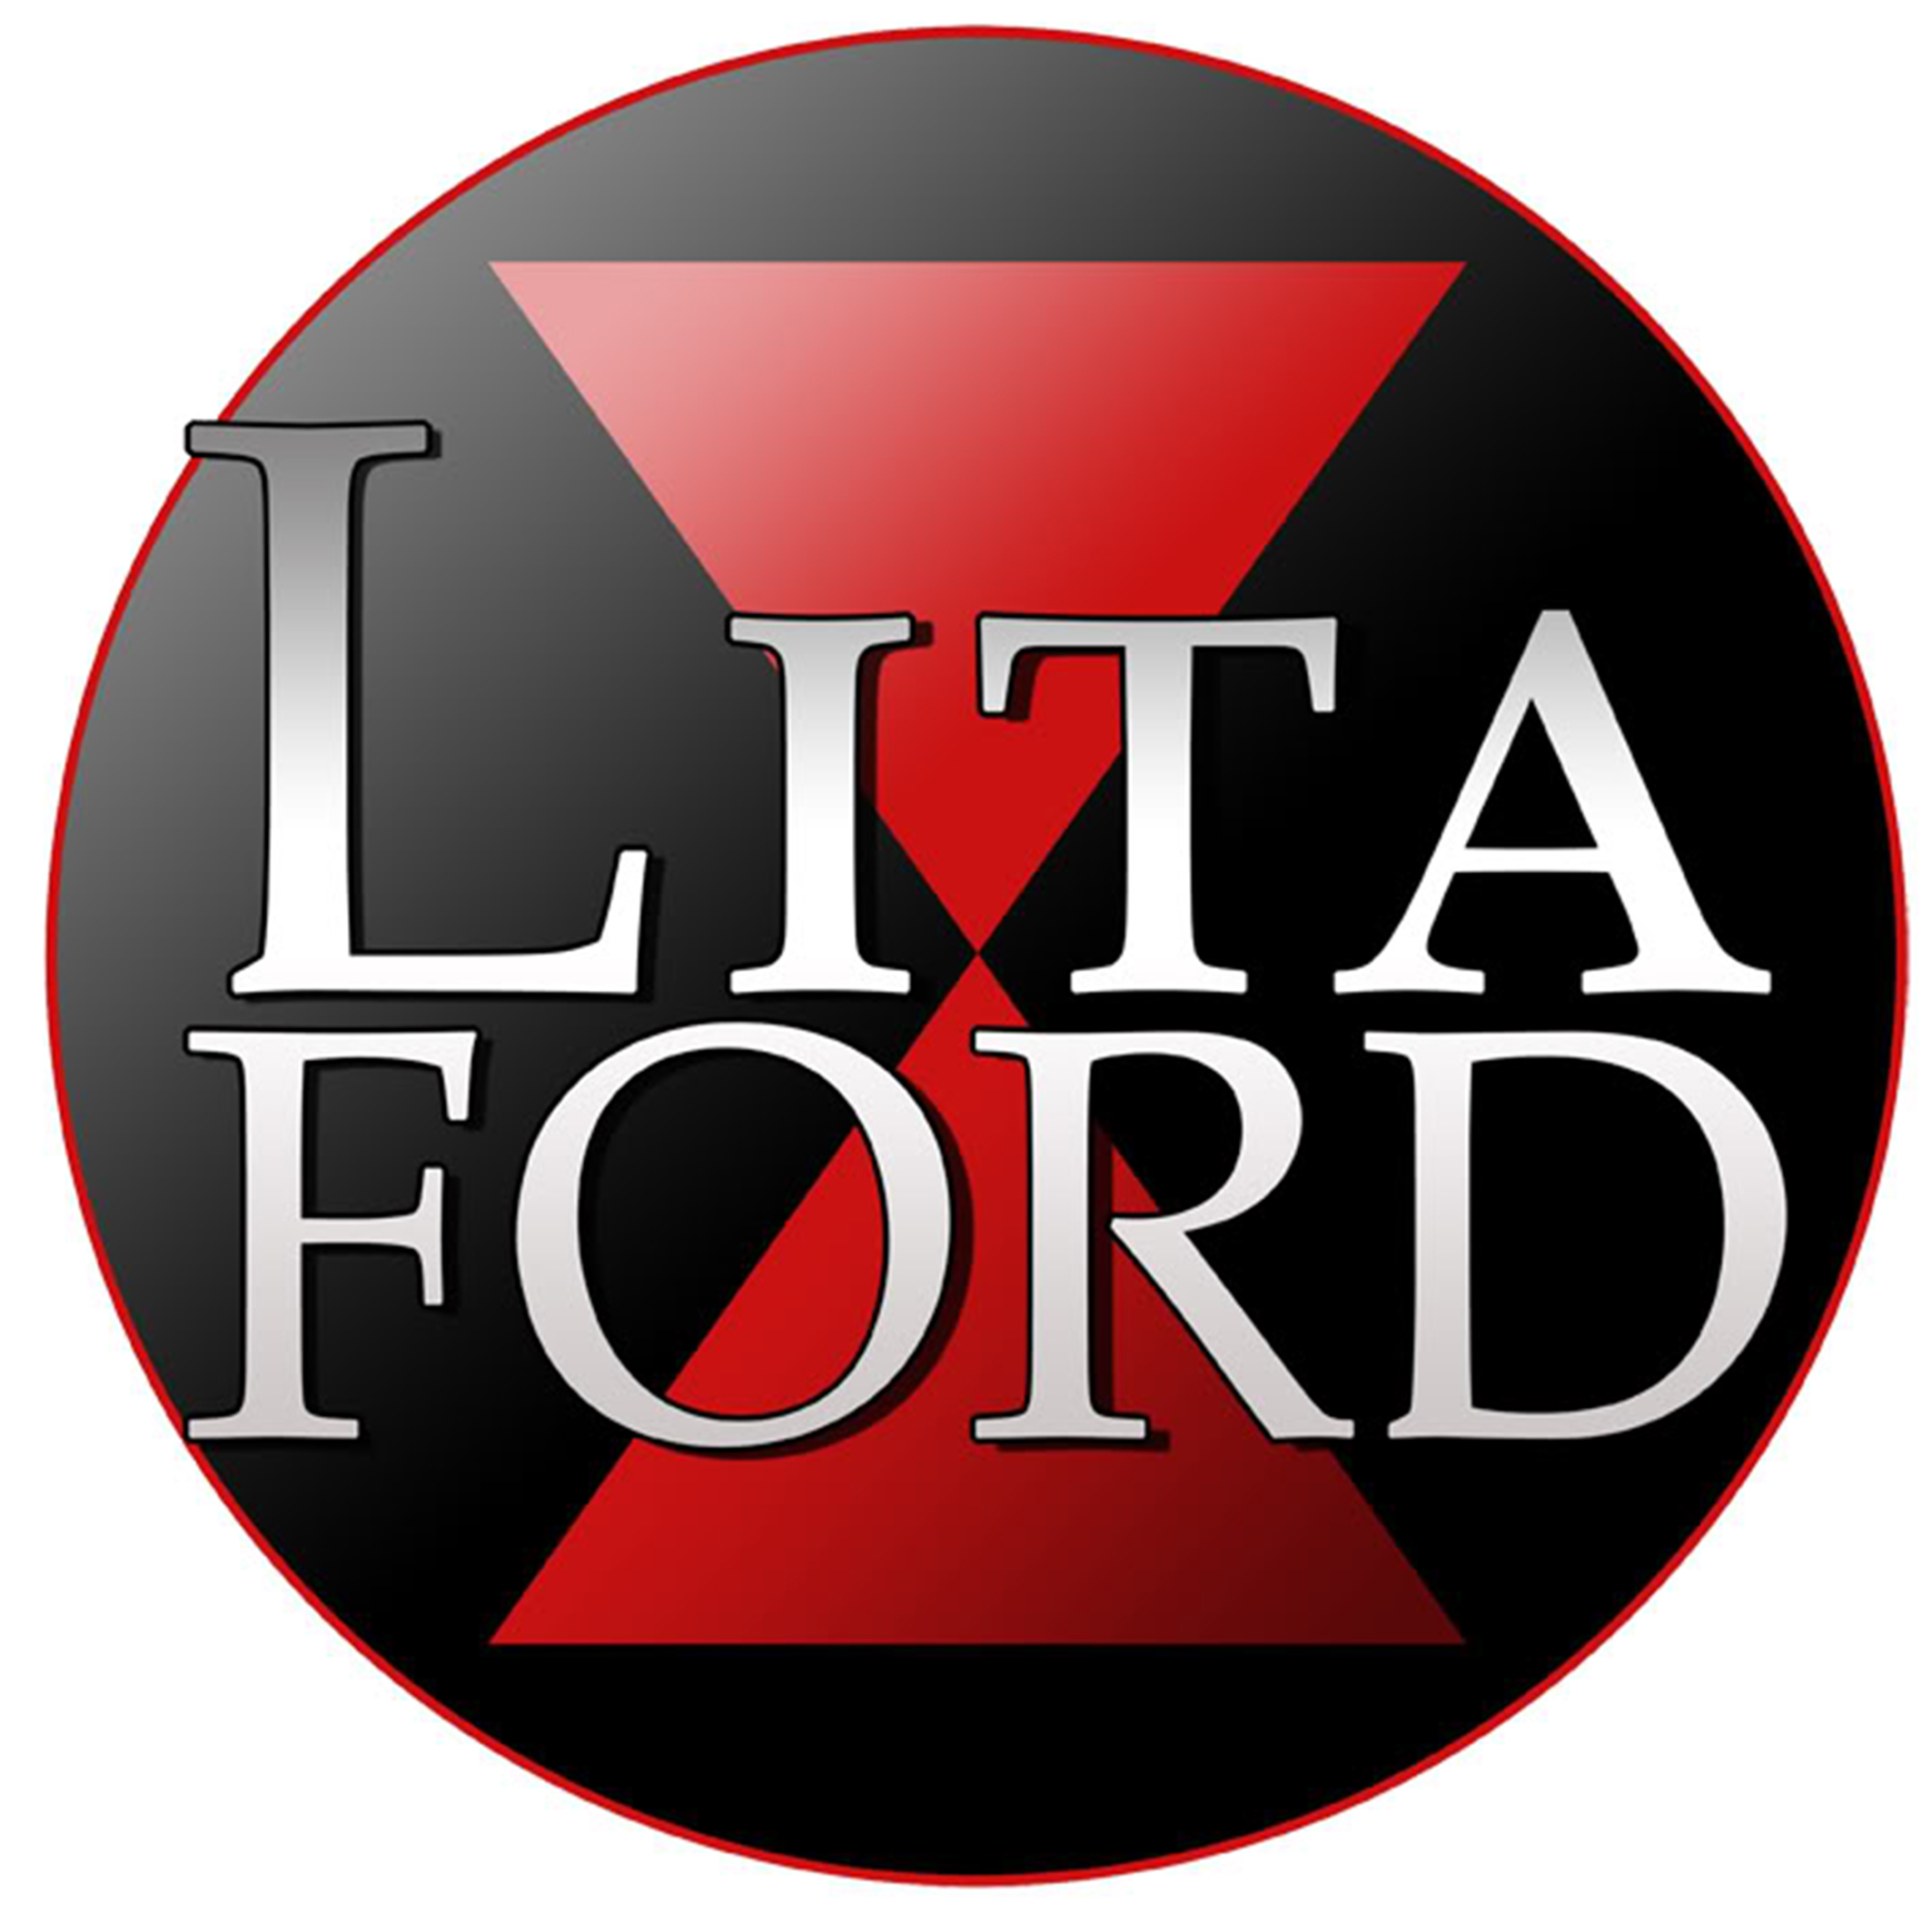 Logotipo de Lita Ford